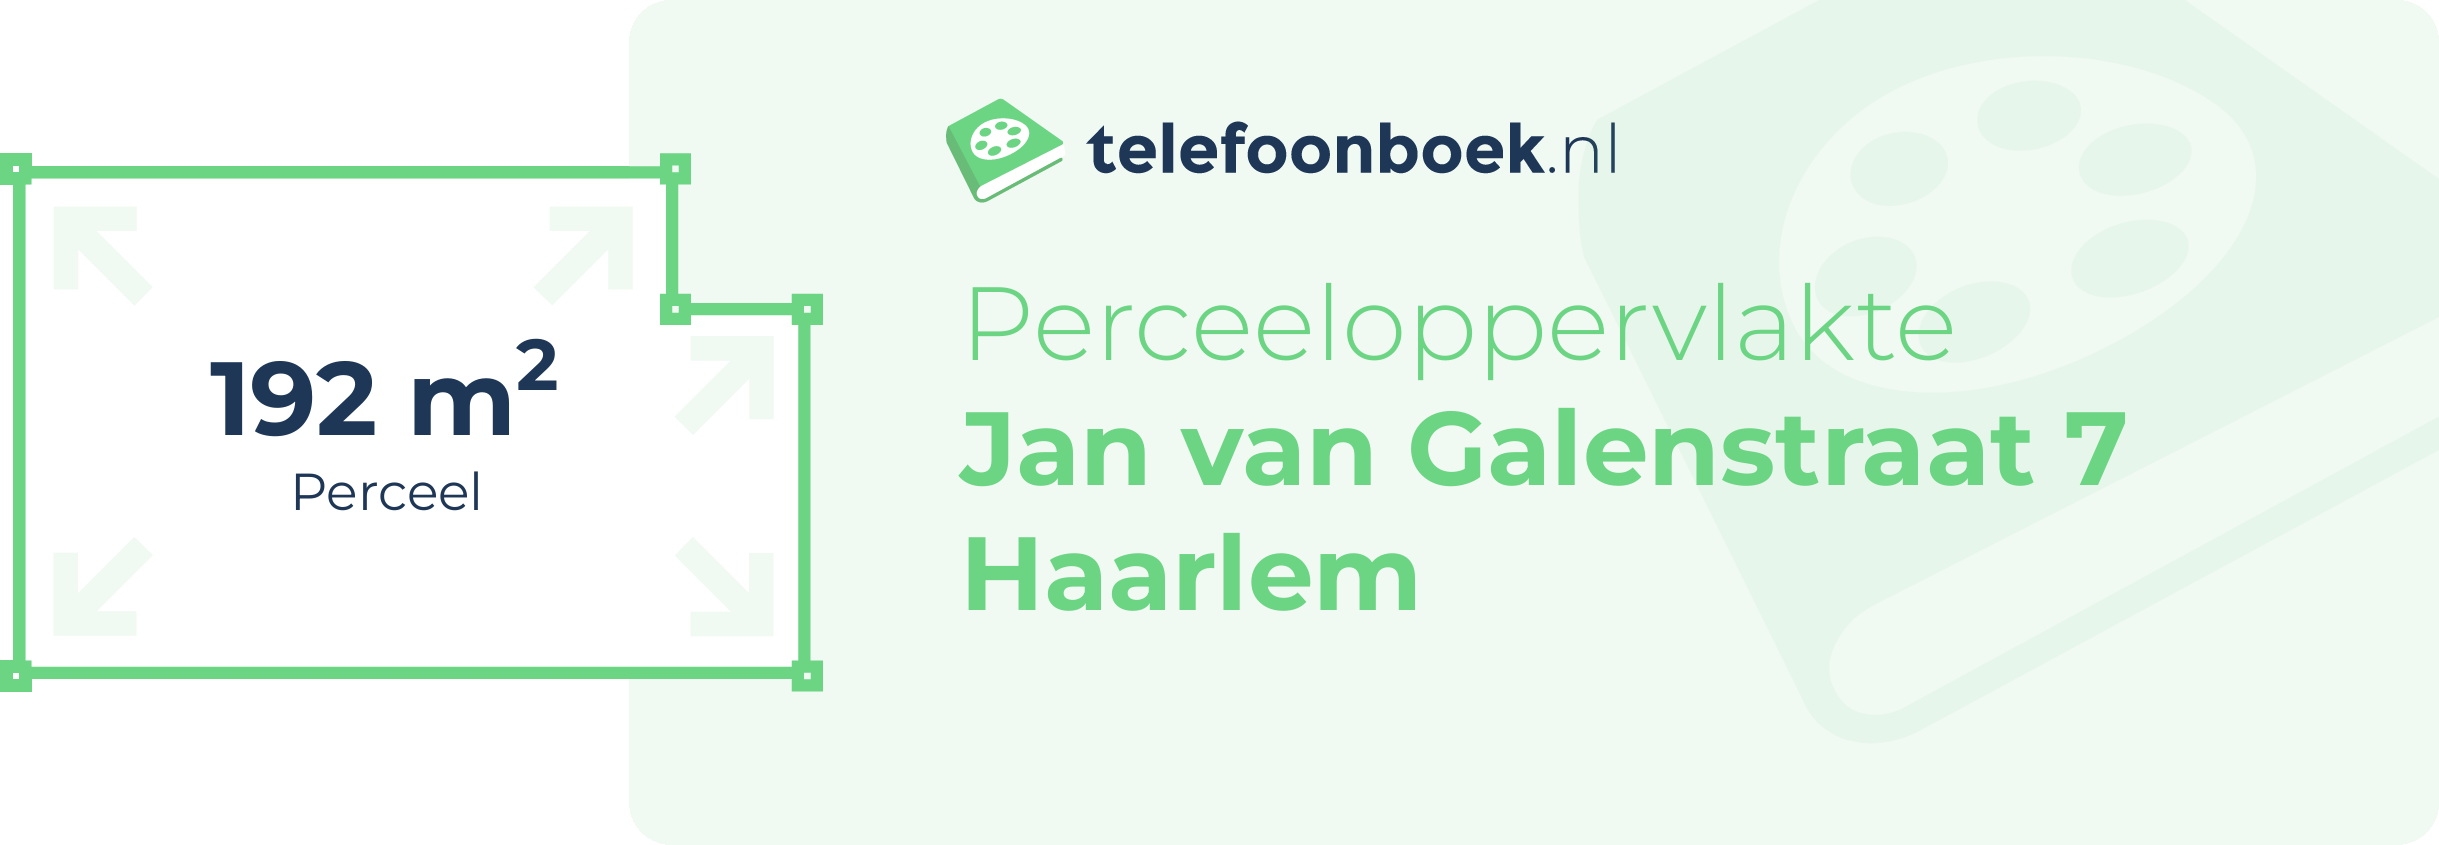 Perceeloppervlakte Jan Van Galenstraat 7 Haarlem